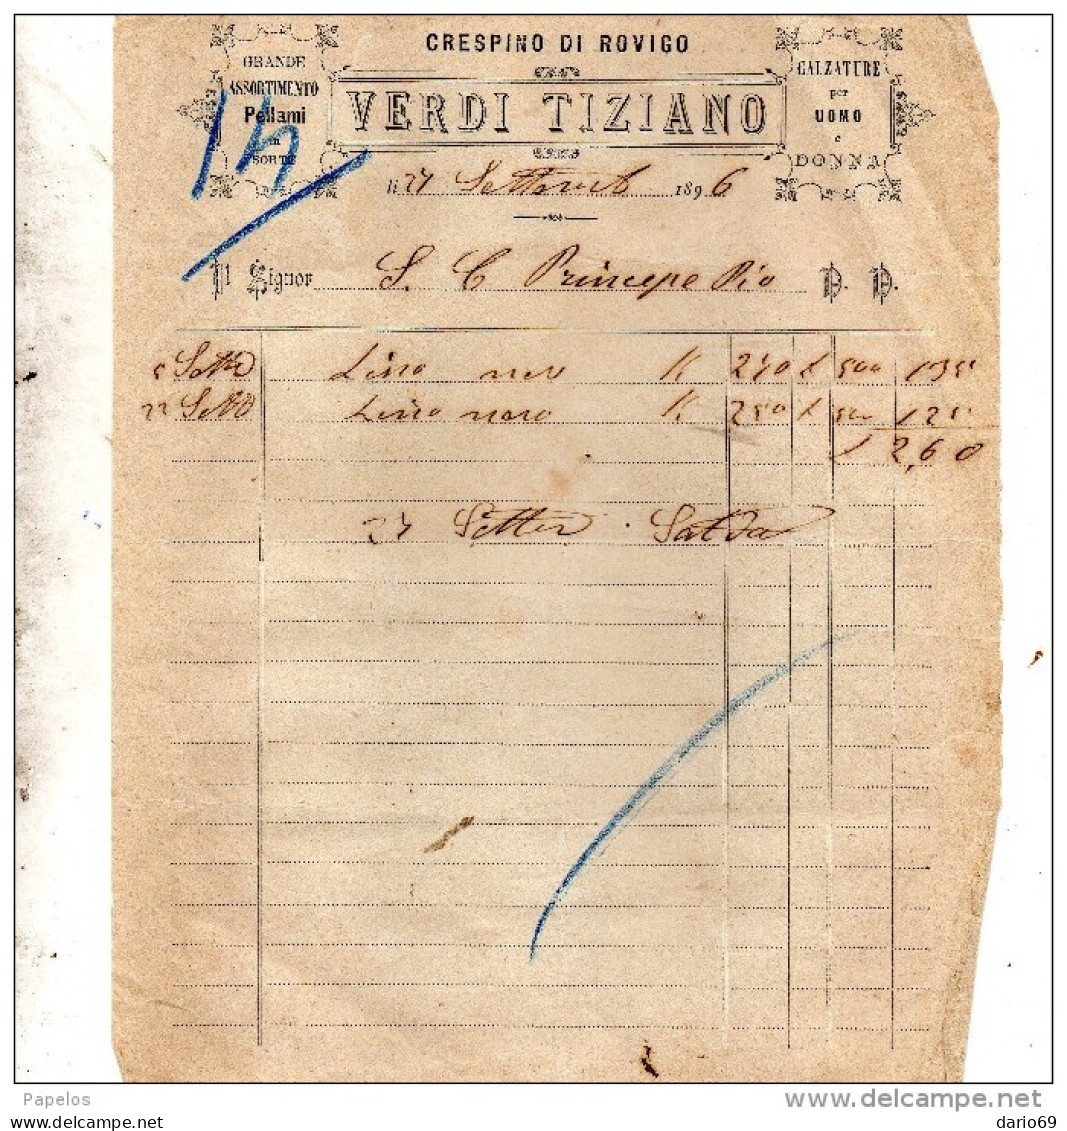 1896 CRESPINO ROVIGO - VERDI TIZIANO - CALZATURE PER UOMO - Italia